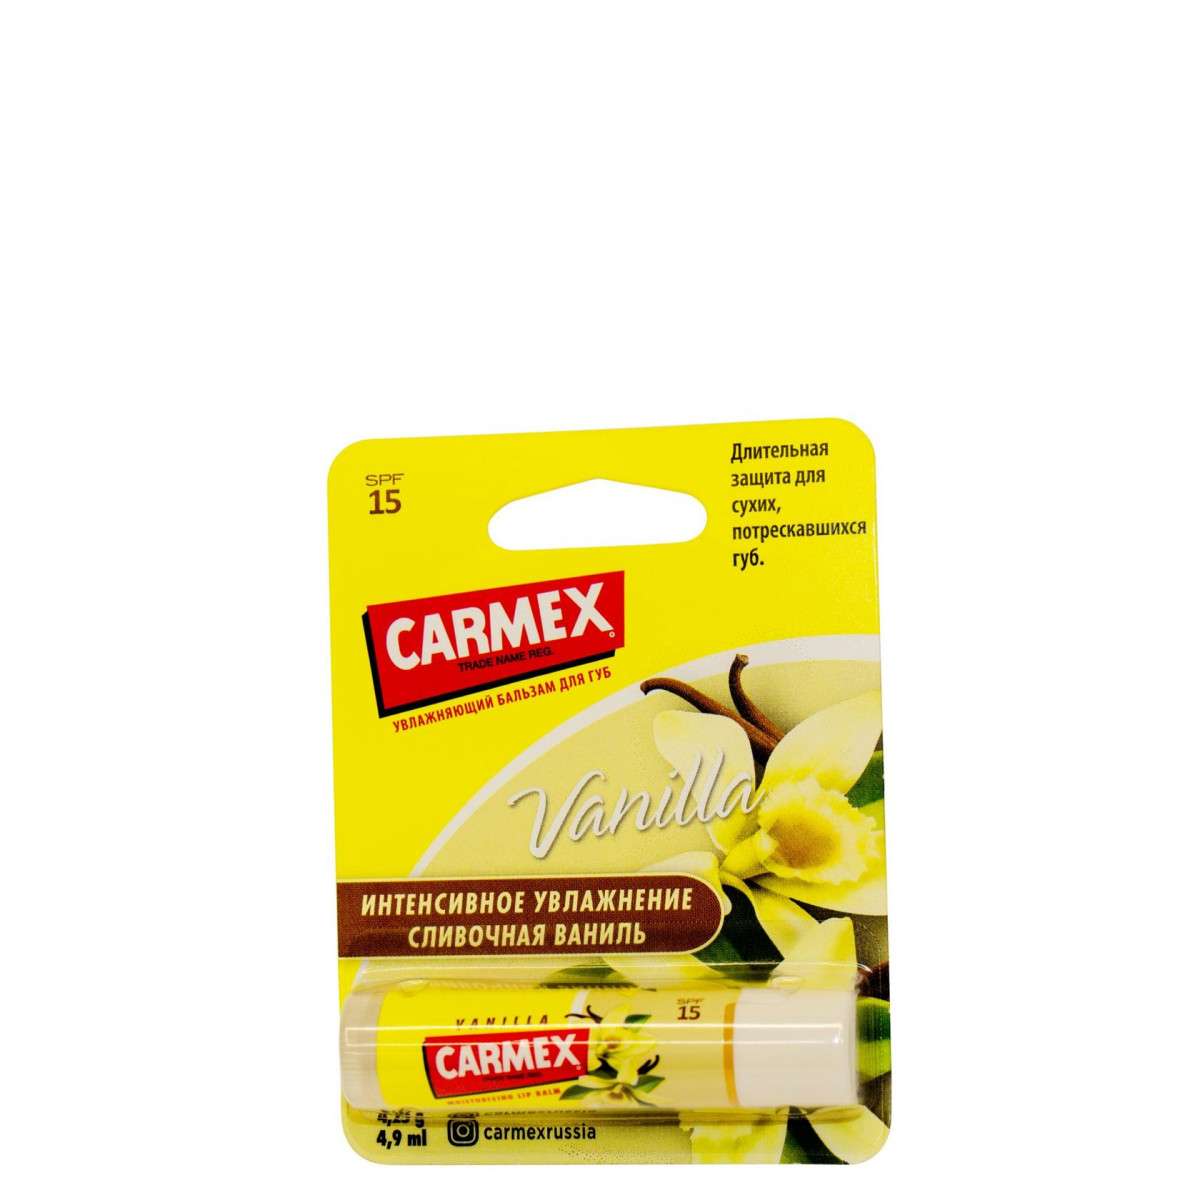 Carmex Бальзам для губ Vanilla